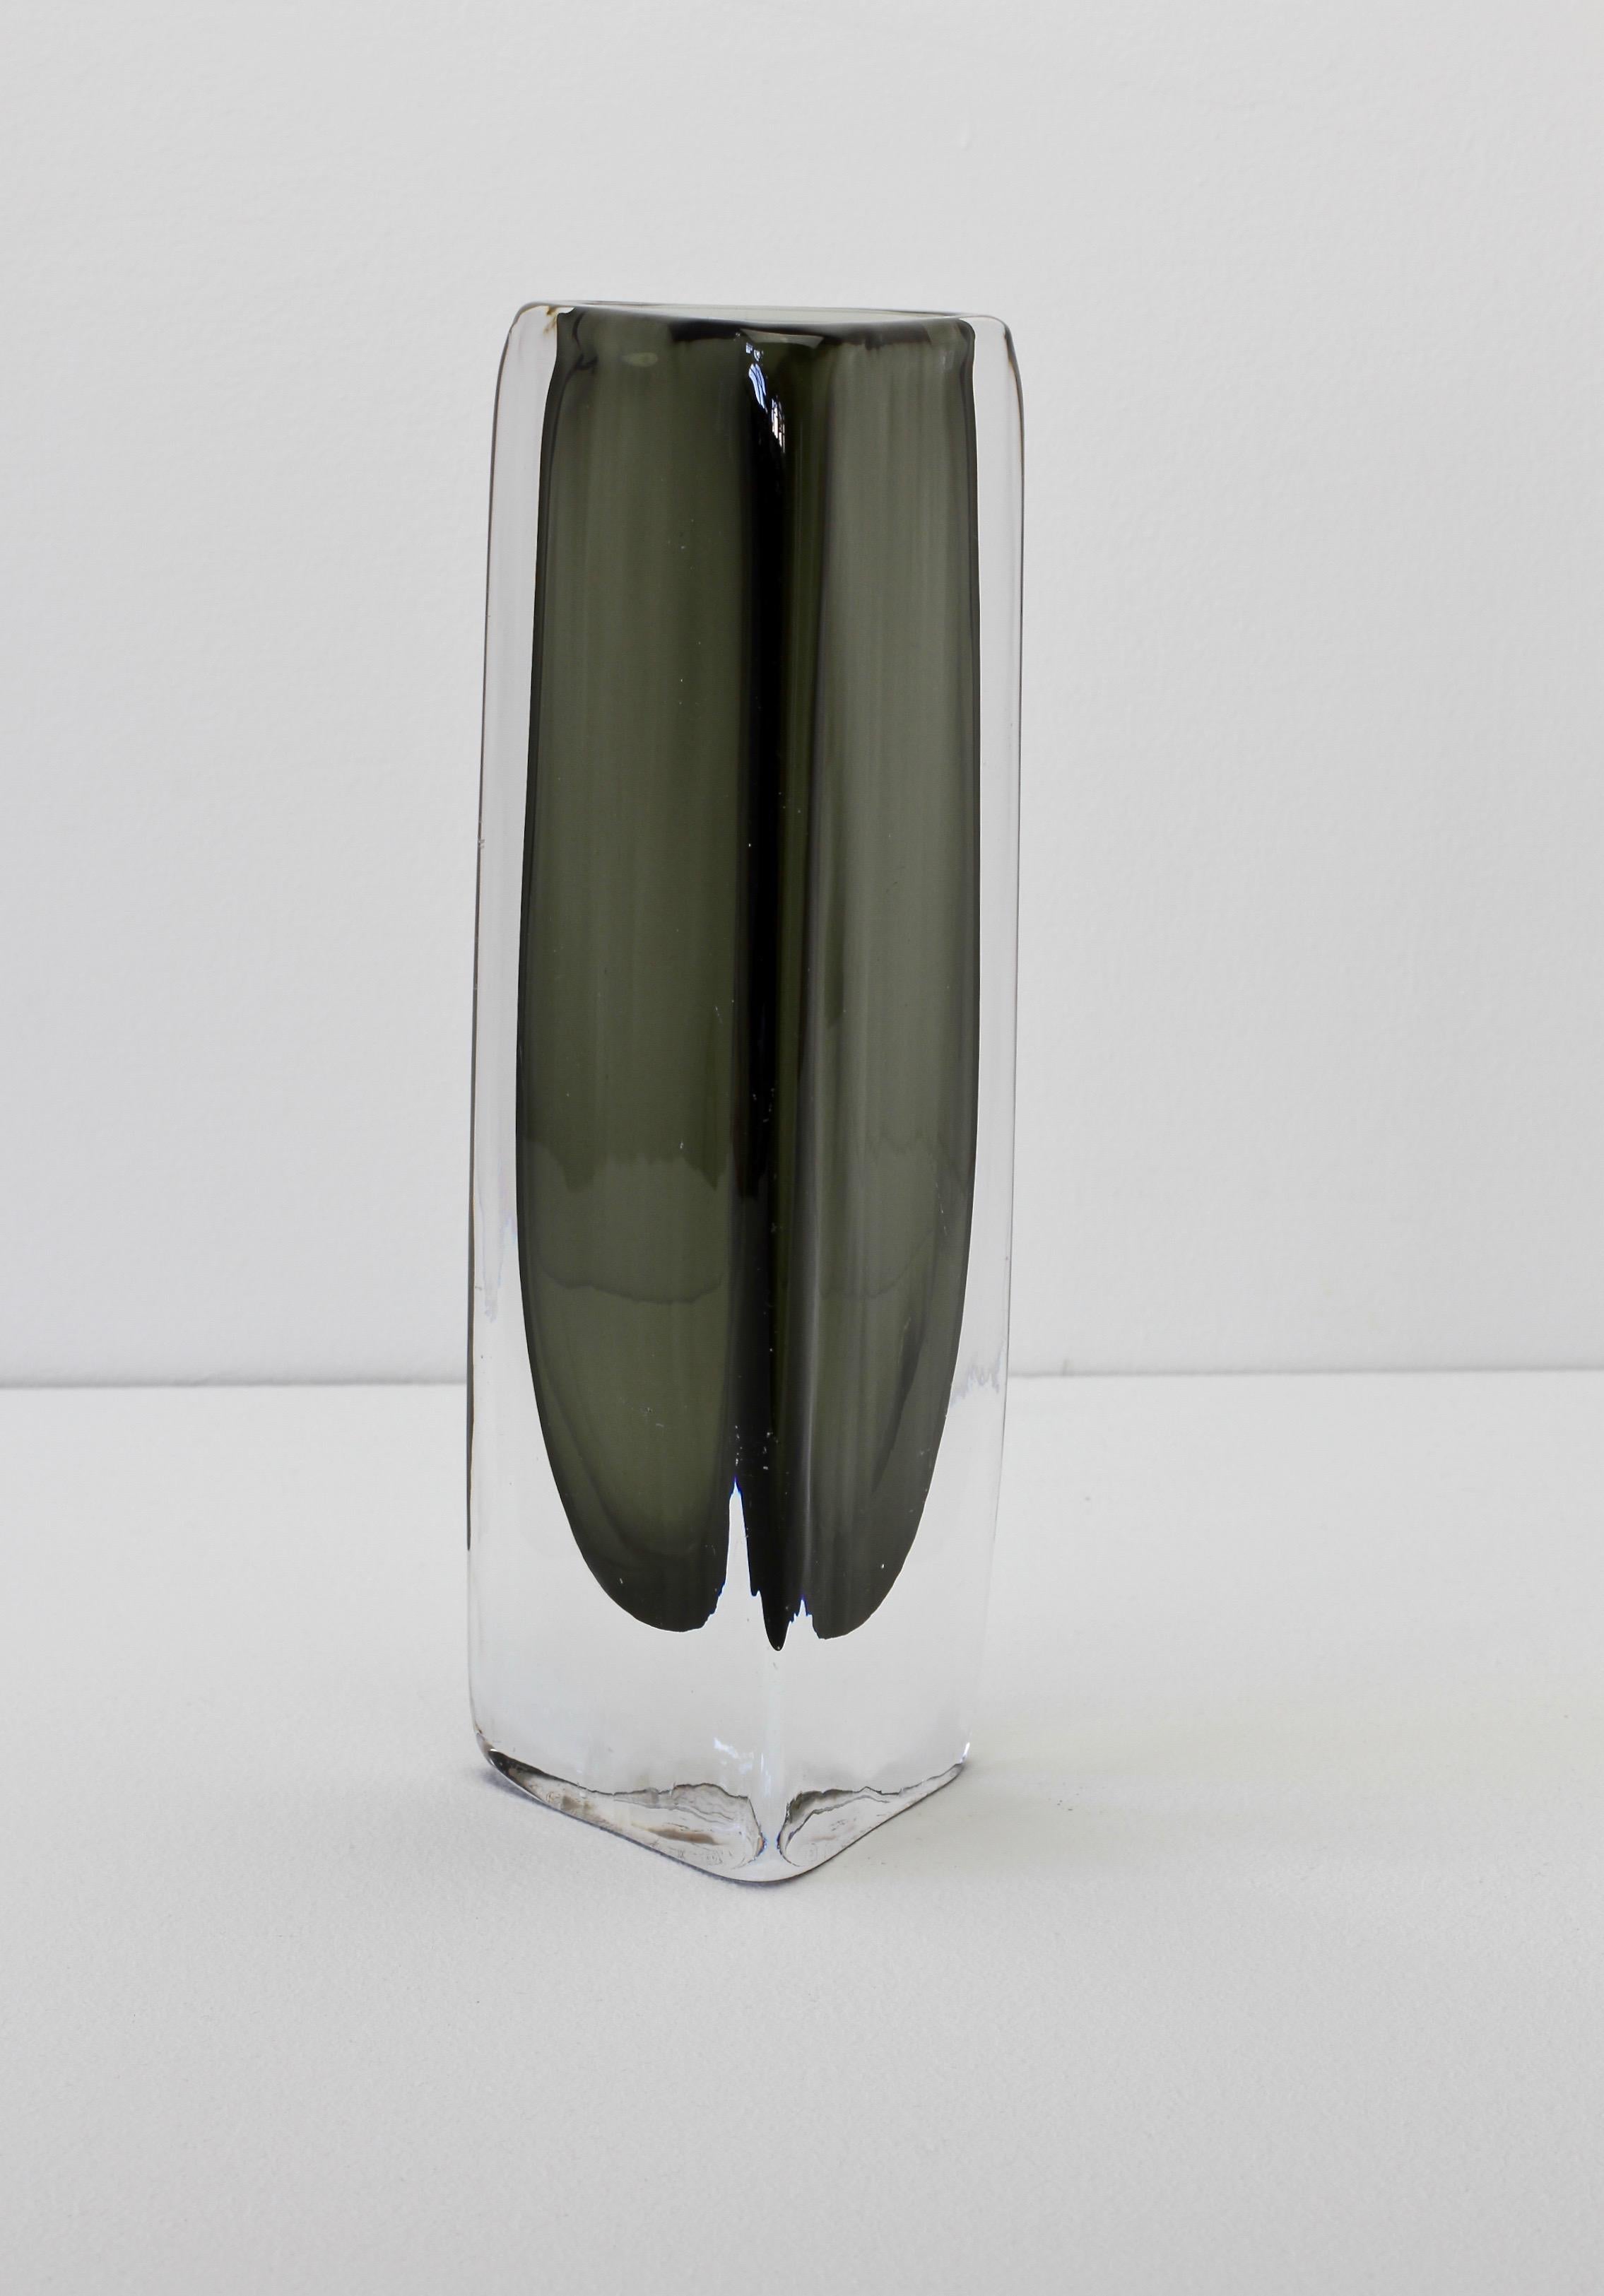 Tall 1950s Dark Toned Sommerso Vase Signed Nils Landberg for Orrefors Glass For Sale 2